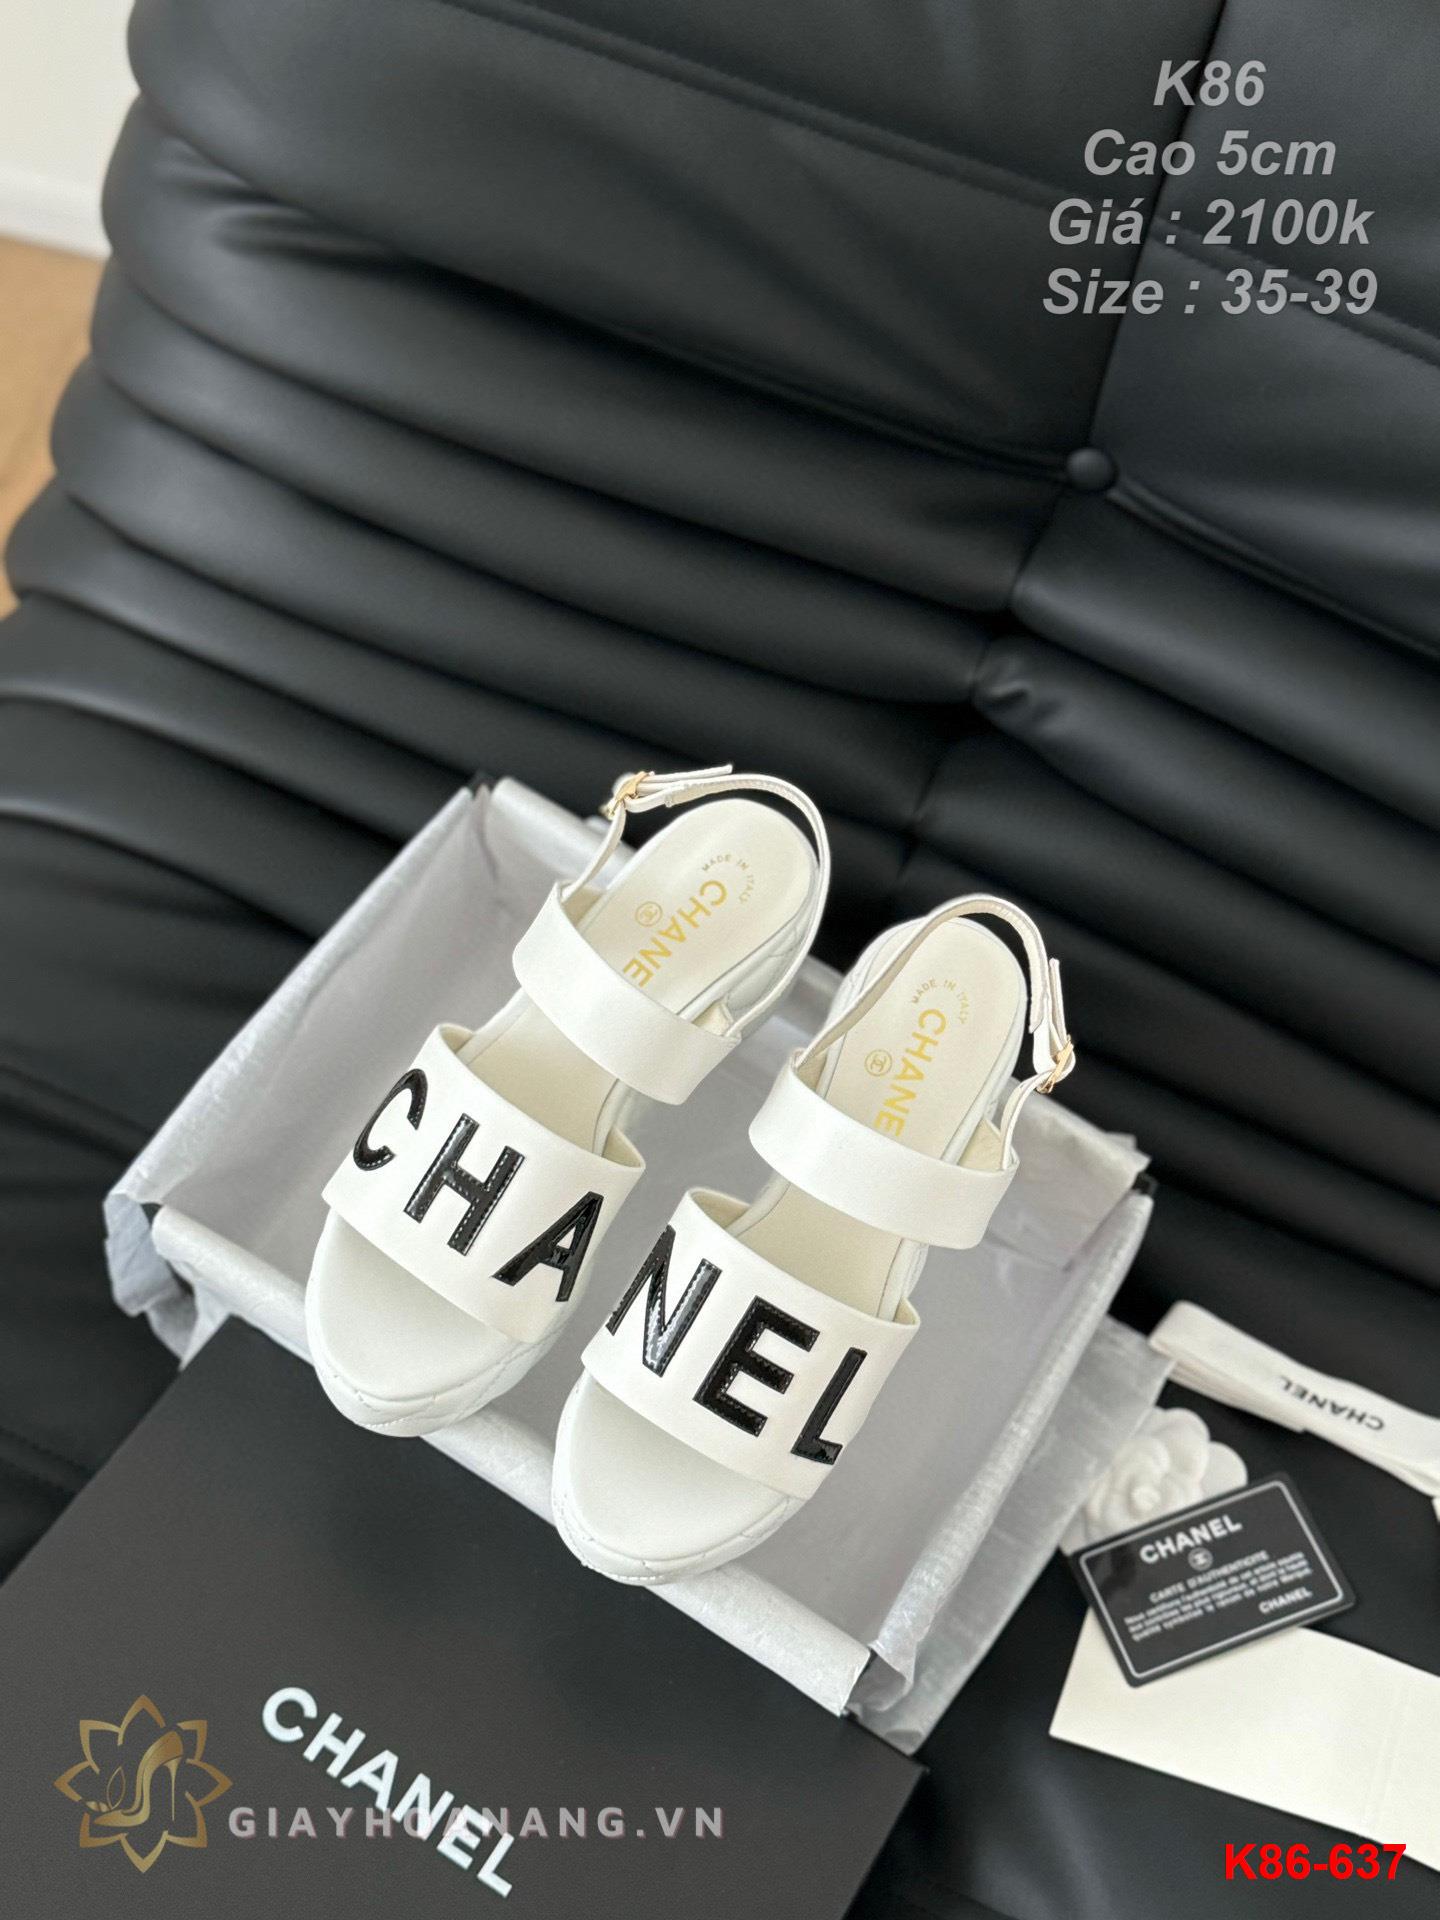 K86-637 Chanel sandal cao gót 5cm siêu cấp